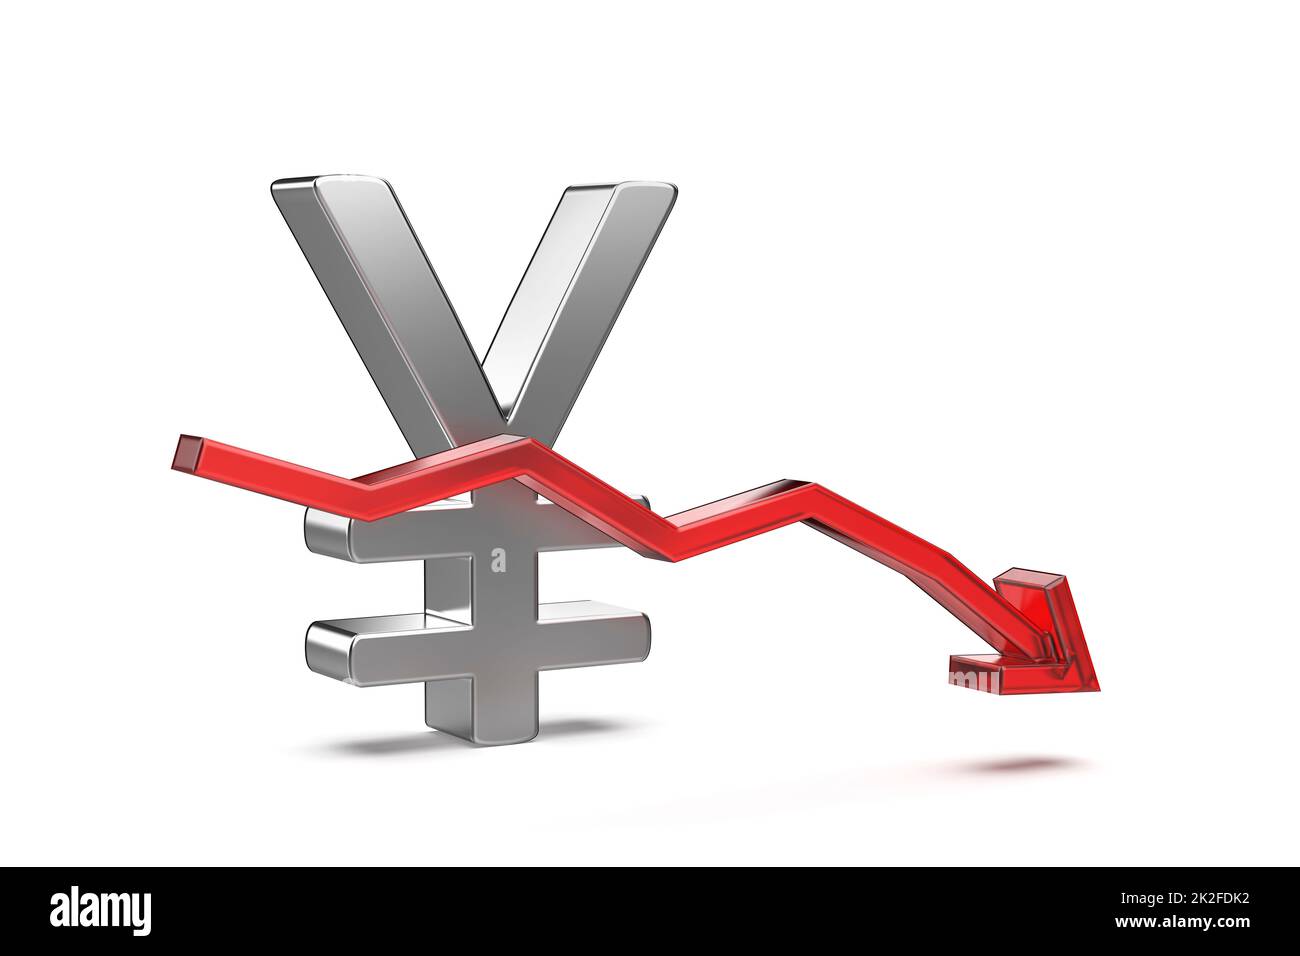 Simbolo Yen giapponese o Yuan cinese con freccia rossa rivolta verso il basso. Foto Stock